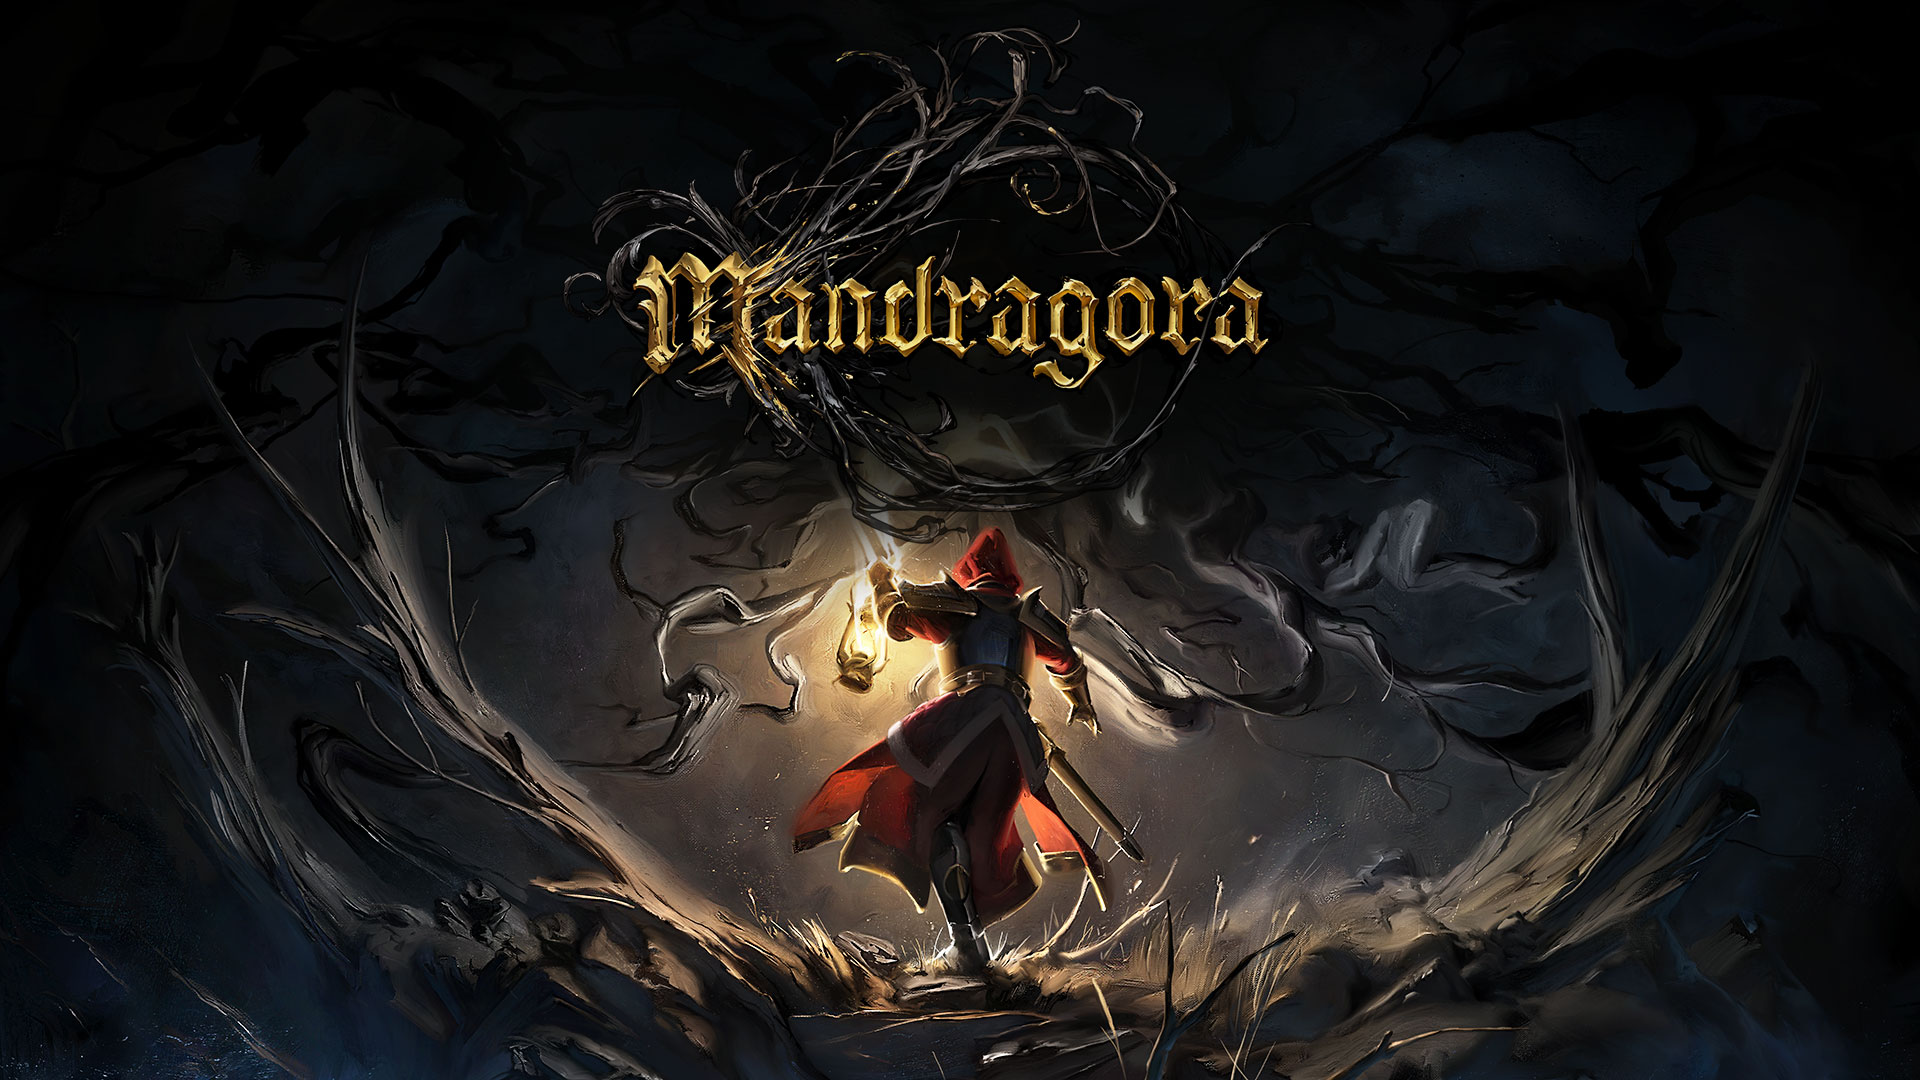 Marvelous Europe is publishing Mandragora